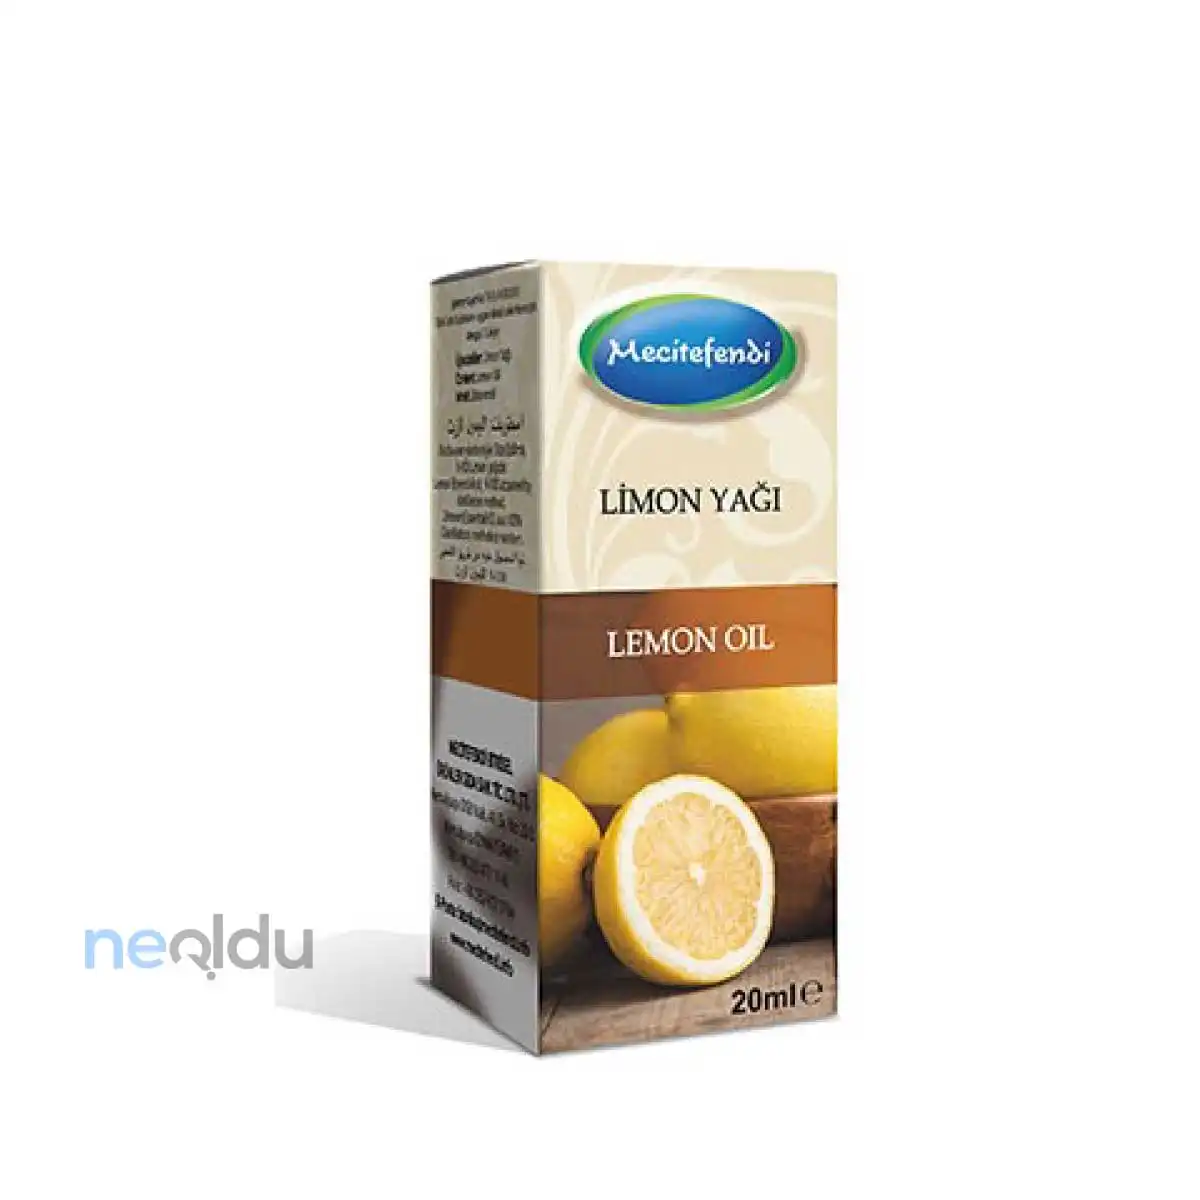 limon yağı içeren ürünler